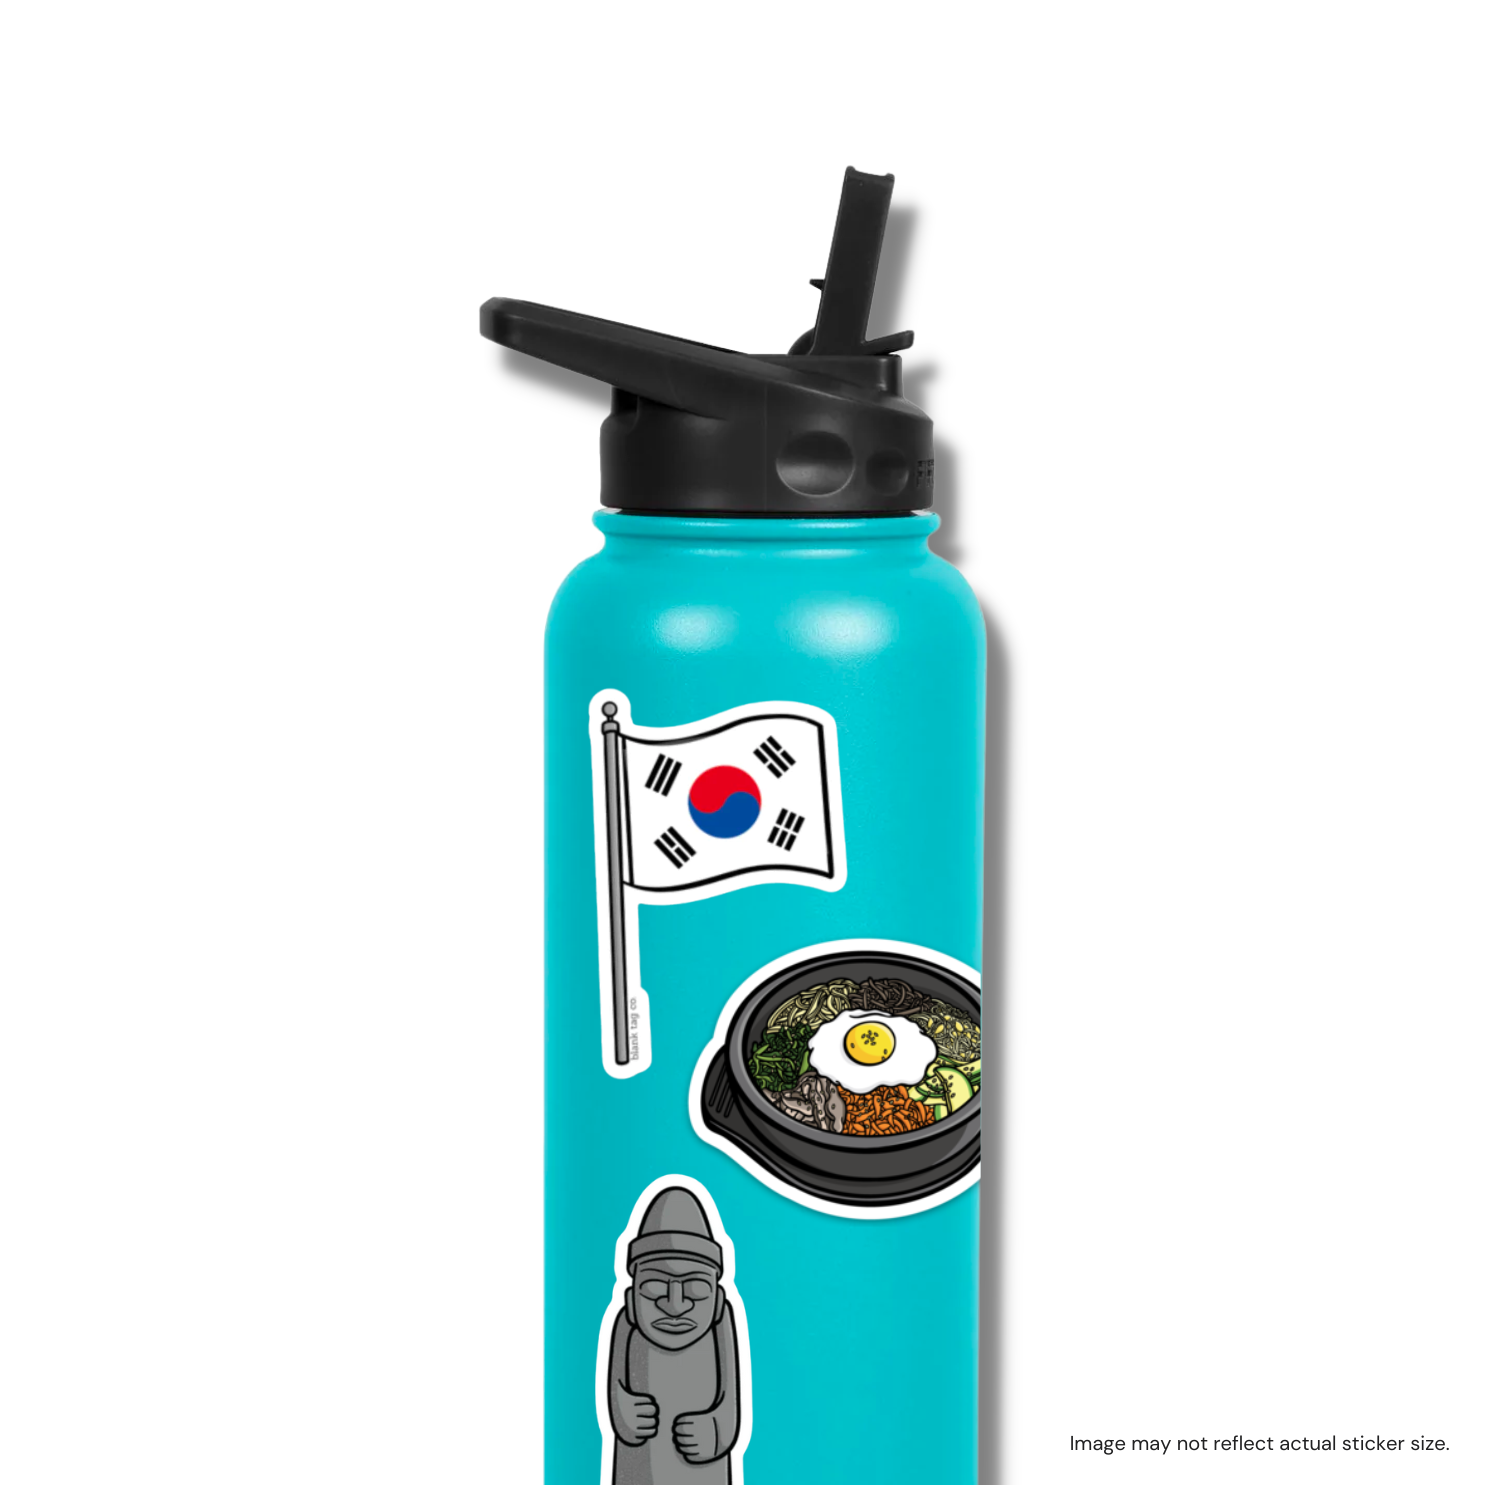 The South Korea Flag Sticker